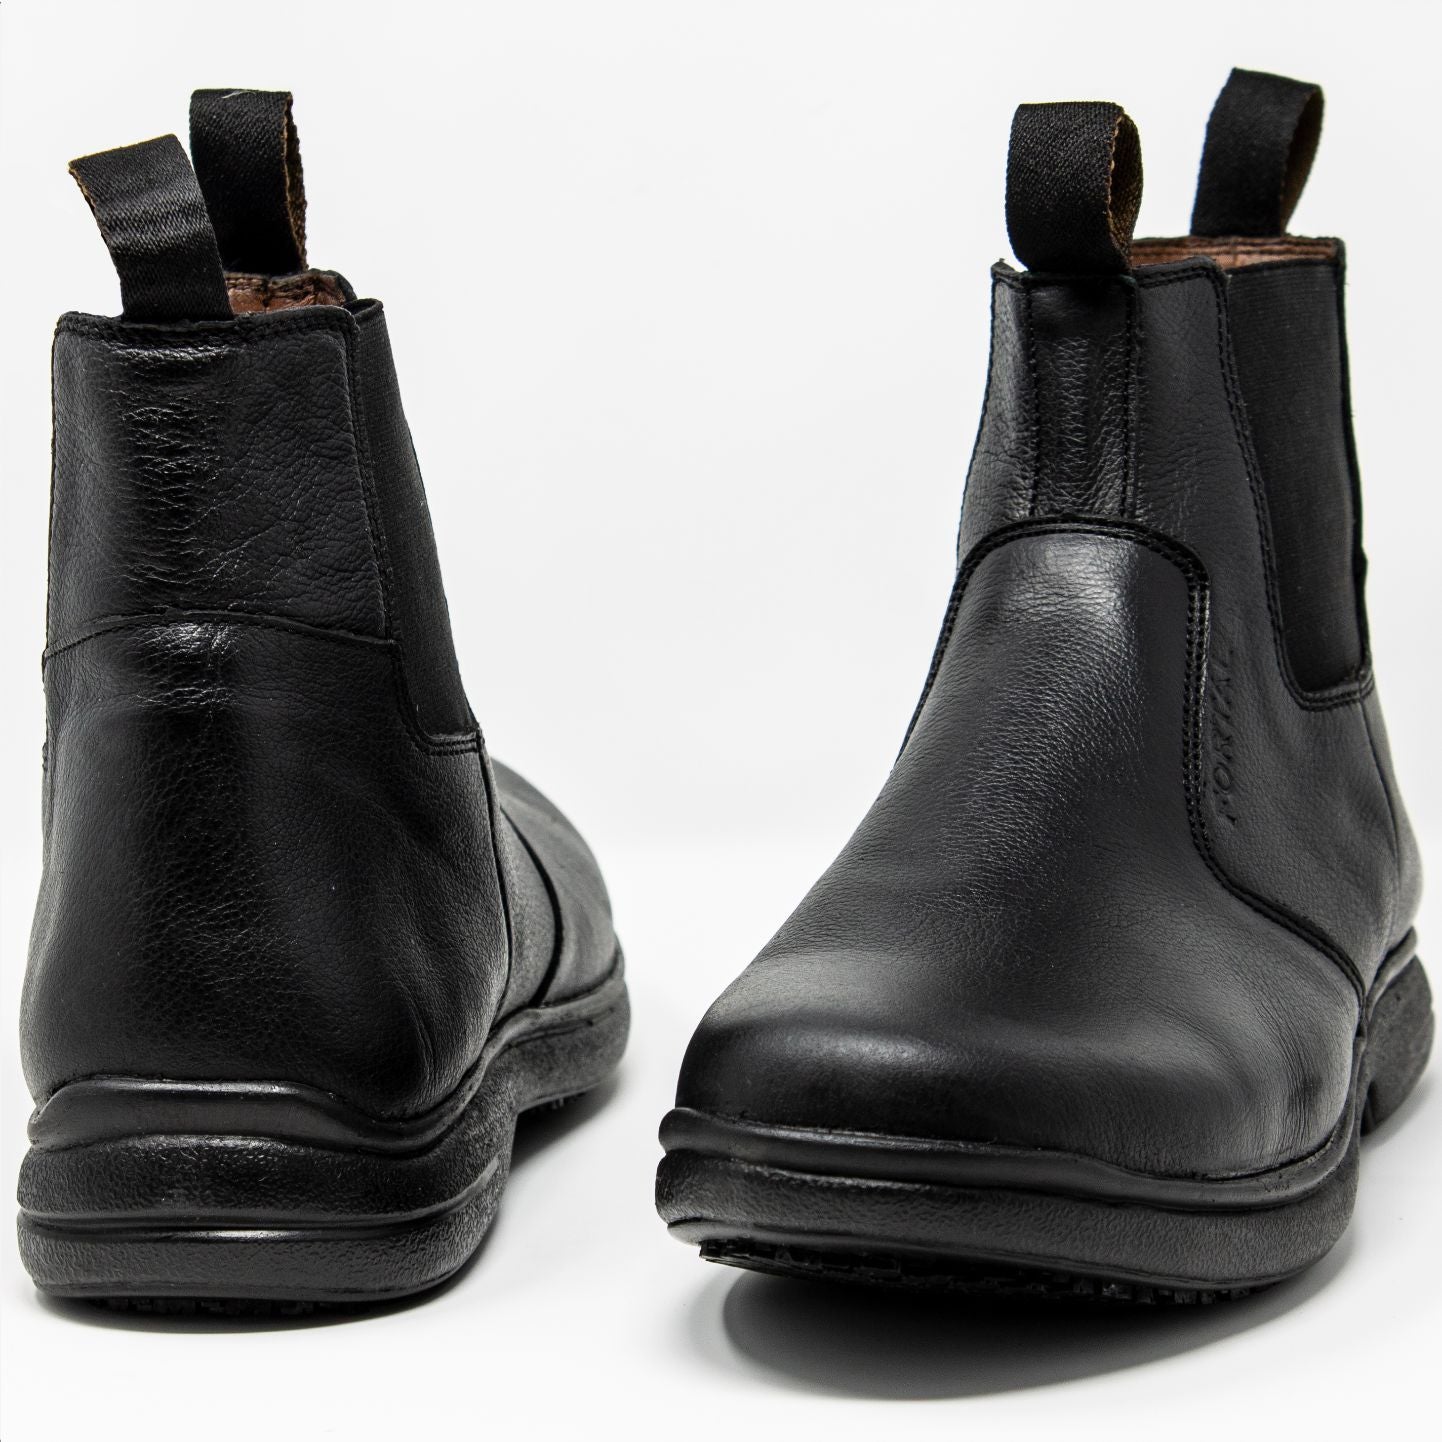 Men's Work Boots - Non Slip - Black Work Boots - Fortal - Slip On Work Boots - Black Ankle Work Boots